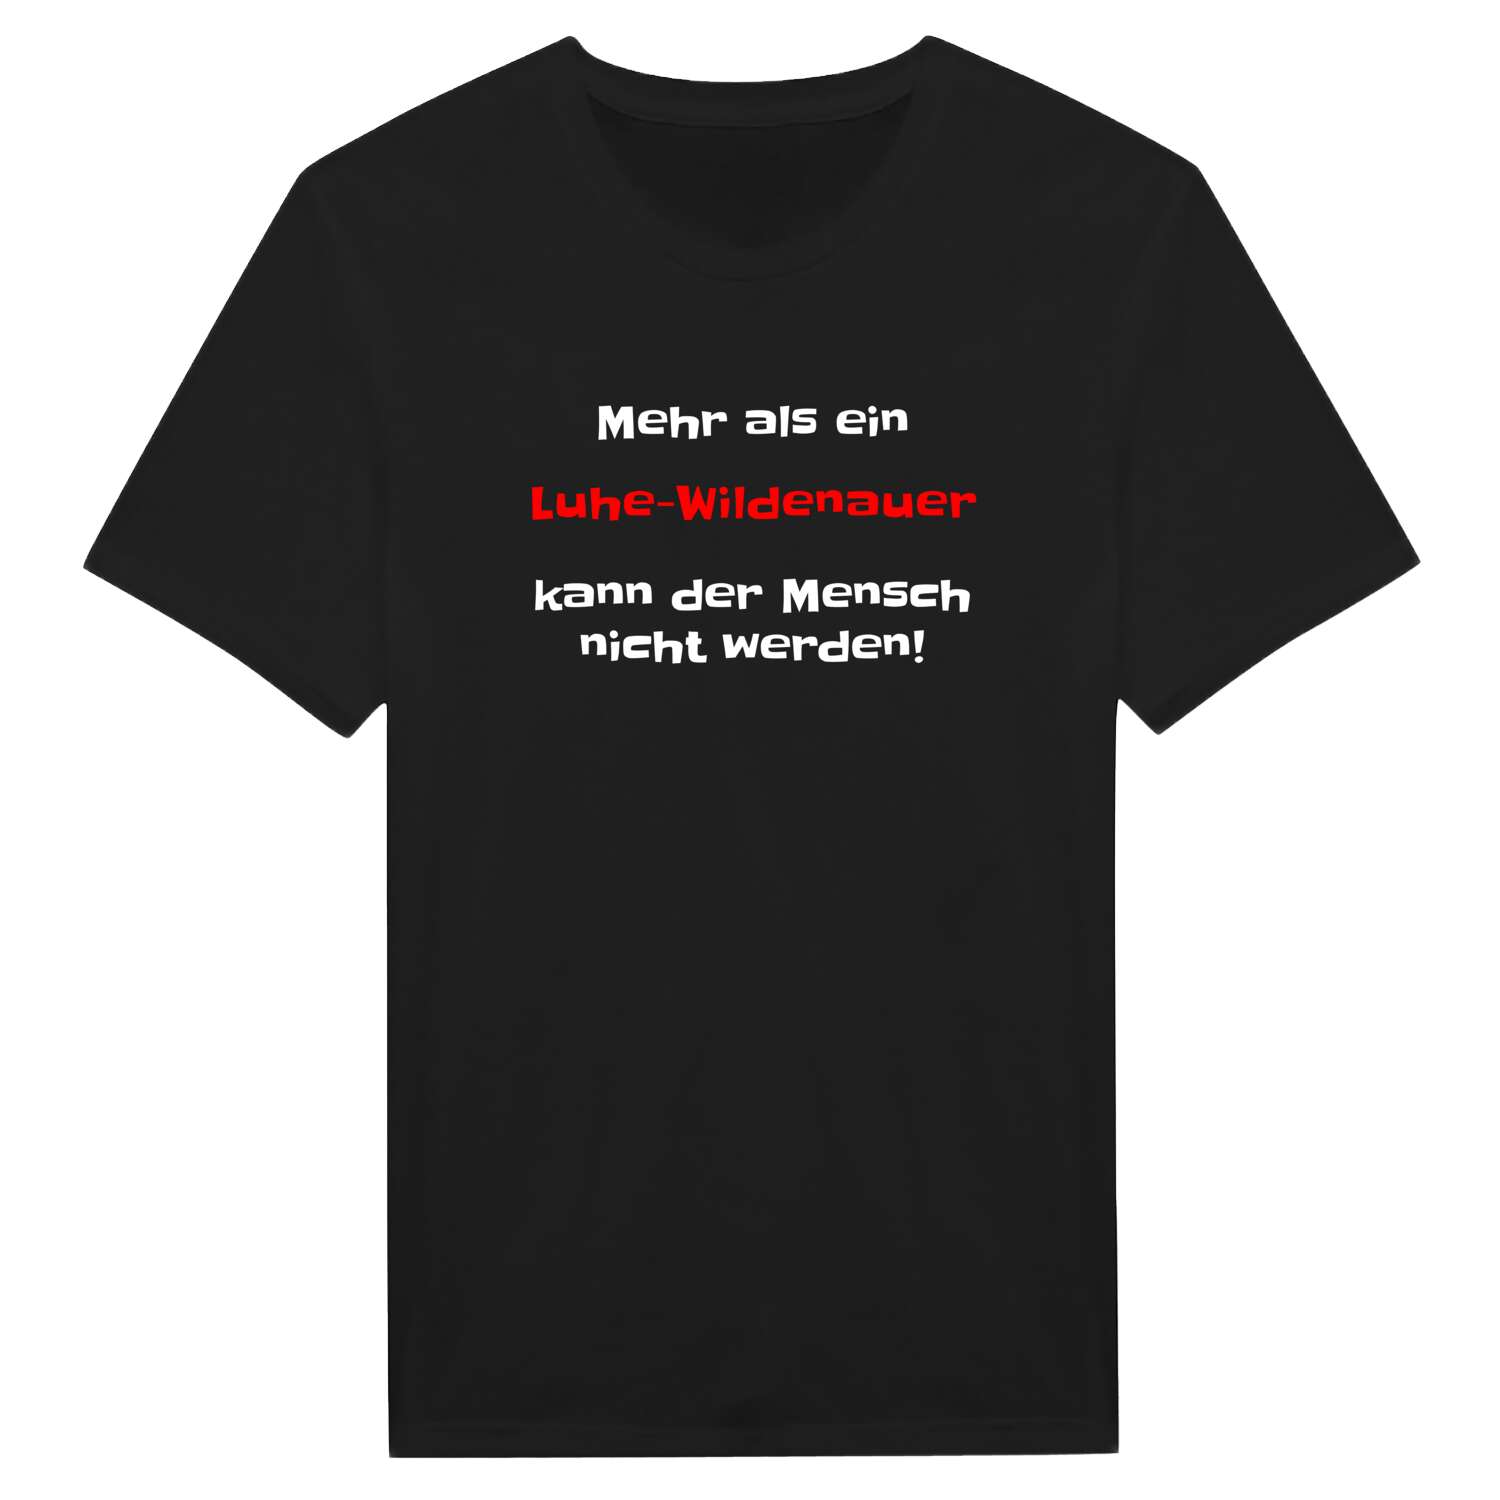 Luhe-Wildenau T-Shirt »Mehr als ein«